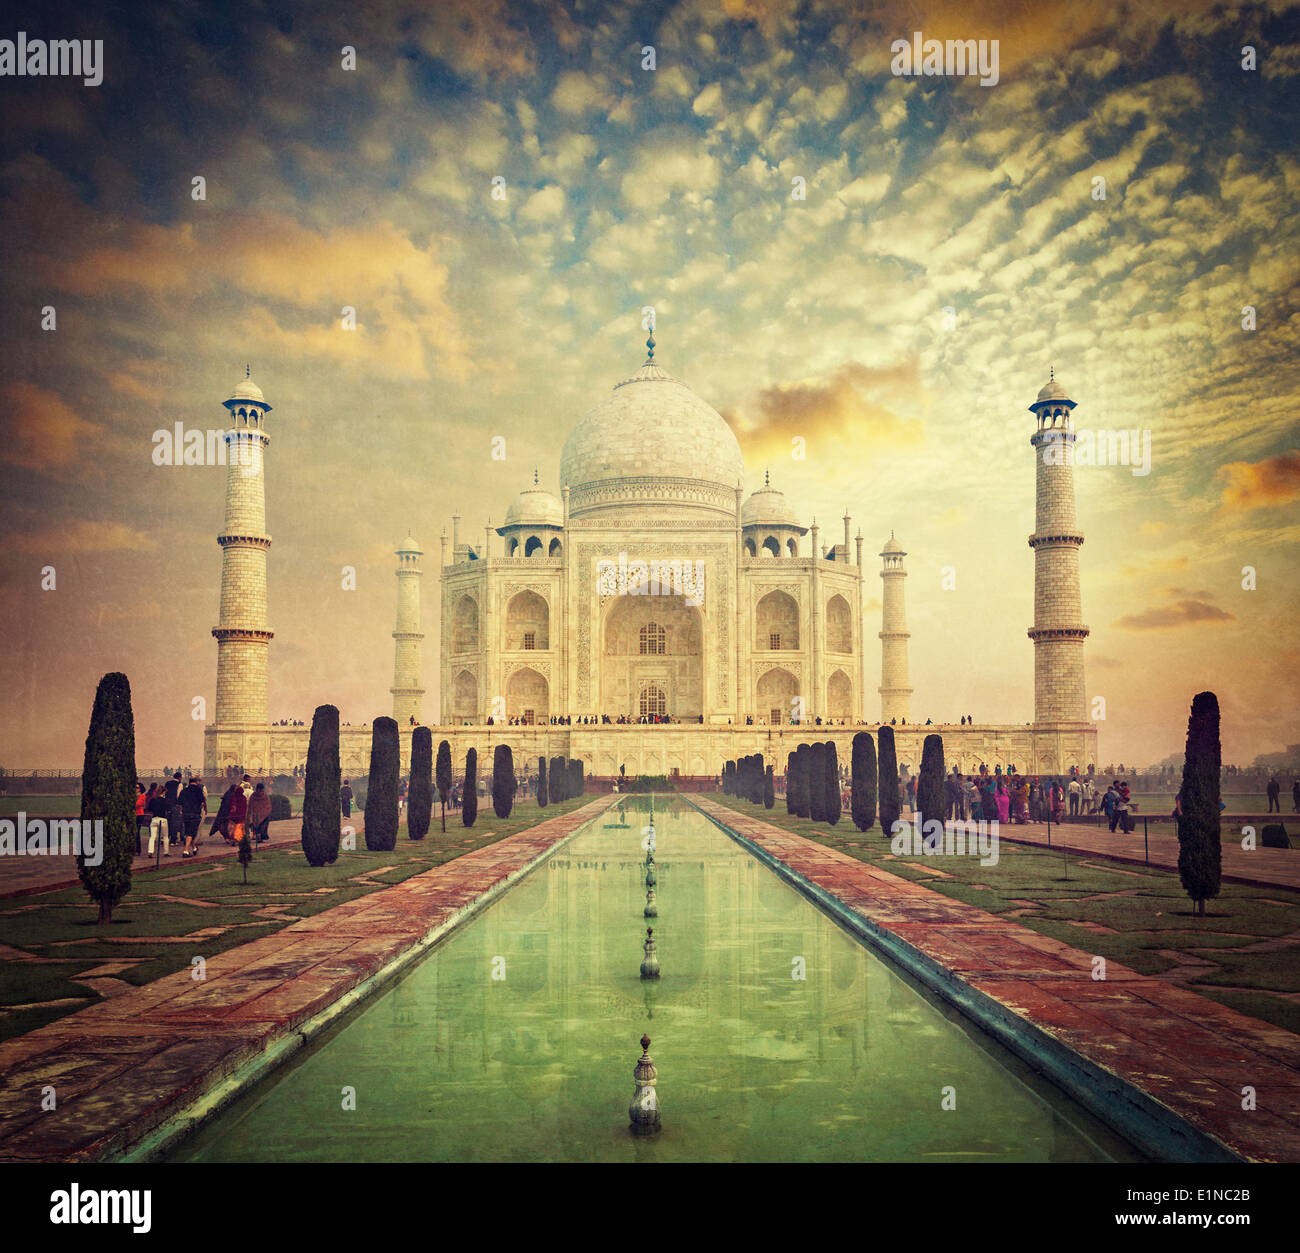 Taj Mahal sur le lever du soleil coucher du soleil, symbole indien - Inde billet d'arrière-plan. Agra, Uttar Pradesh, Inde. Retro Vintage style hippie Banque D'Images